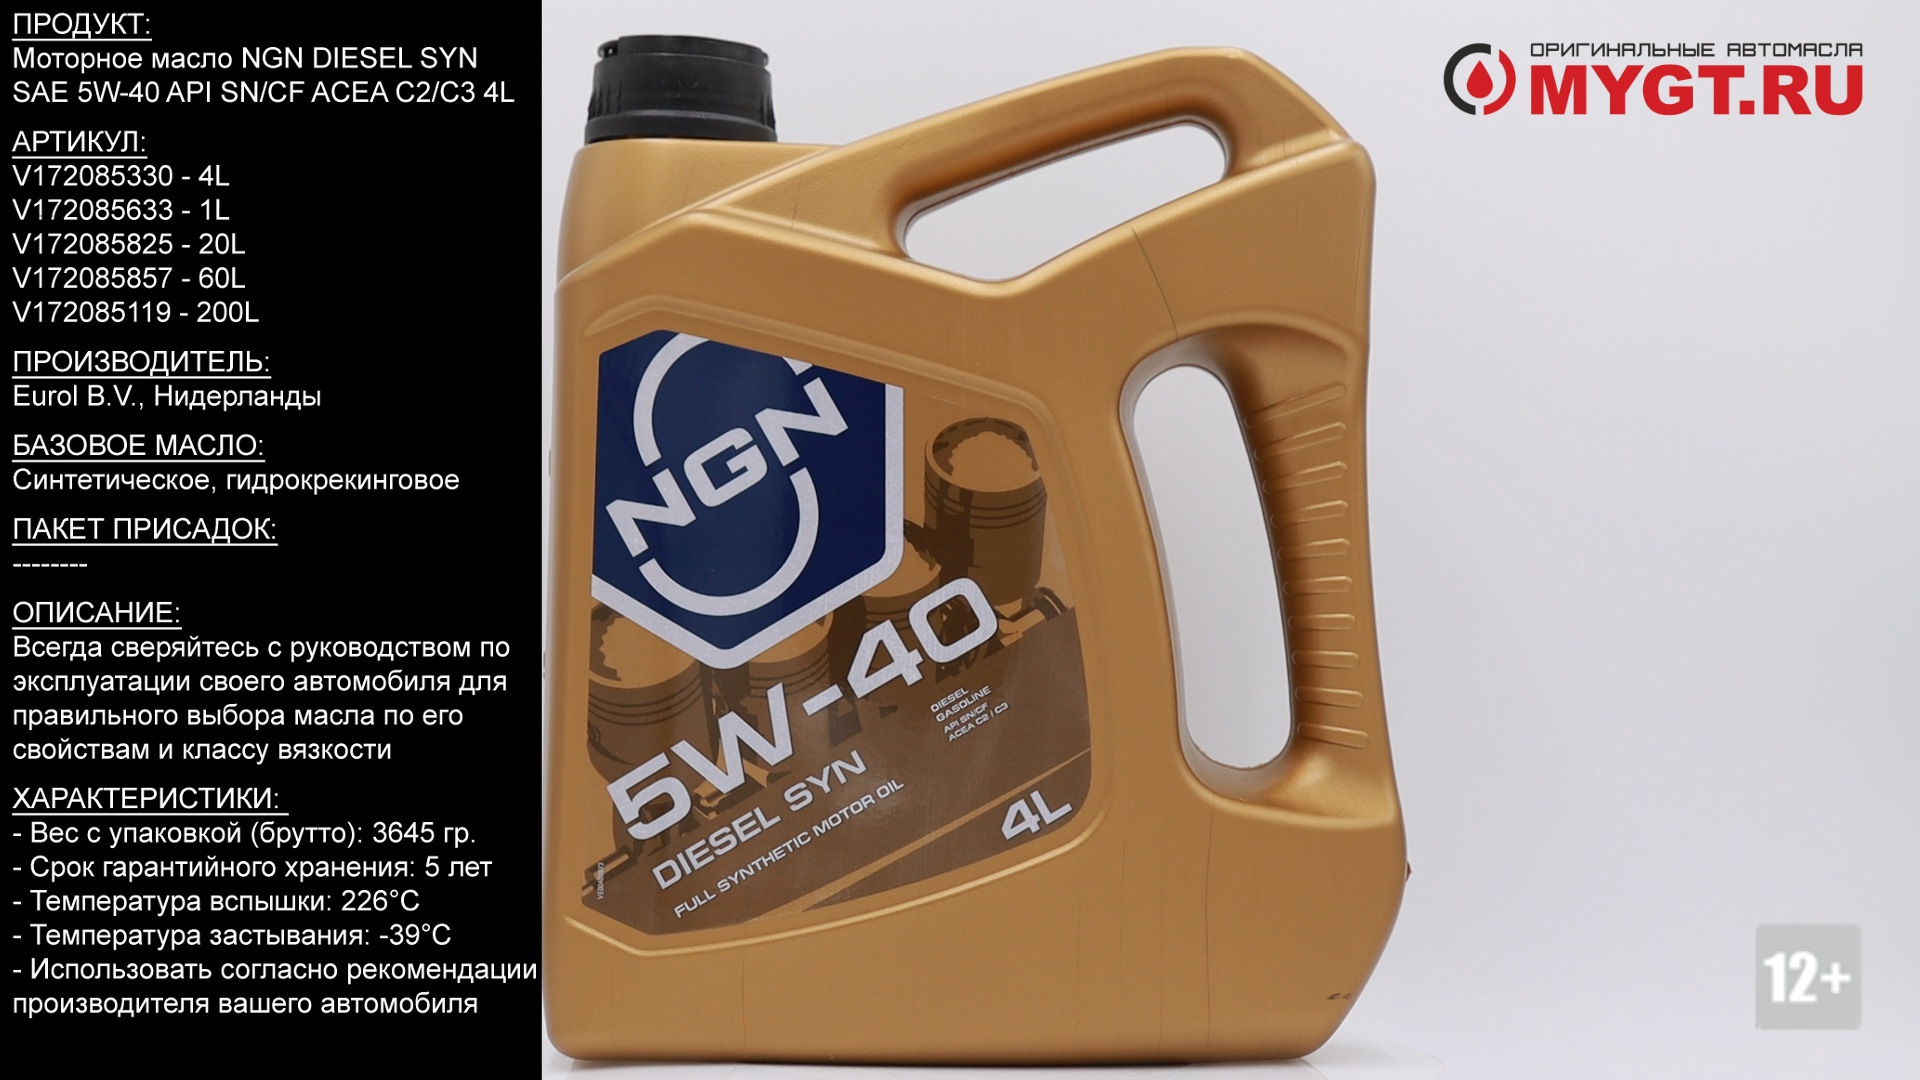 Масло акпп ngn. Моторное масло NGN 5w40. Масло NGN 5w40 дизель. 5w-40 Diesel syn CF/SN 4л NGN. NGN Diesel syn 5w-40.